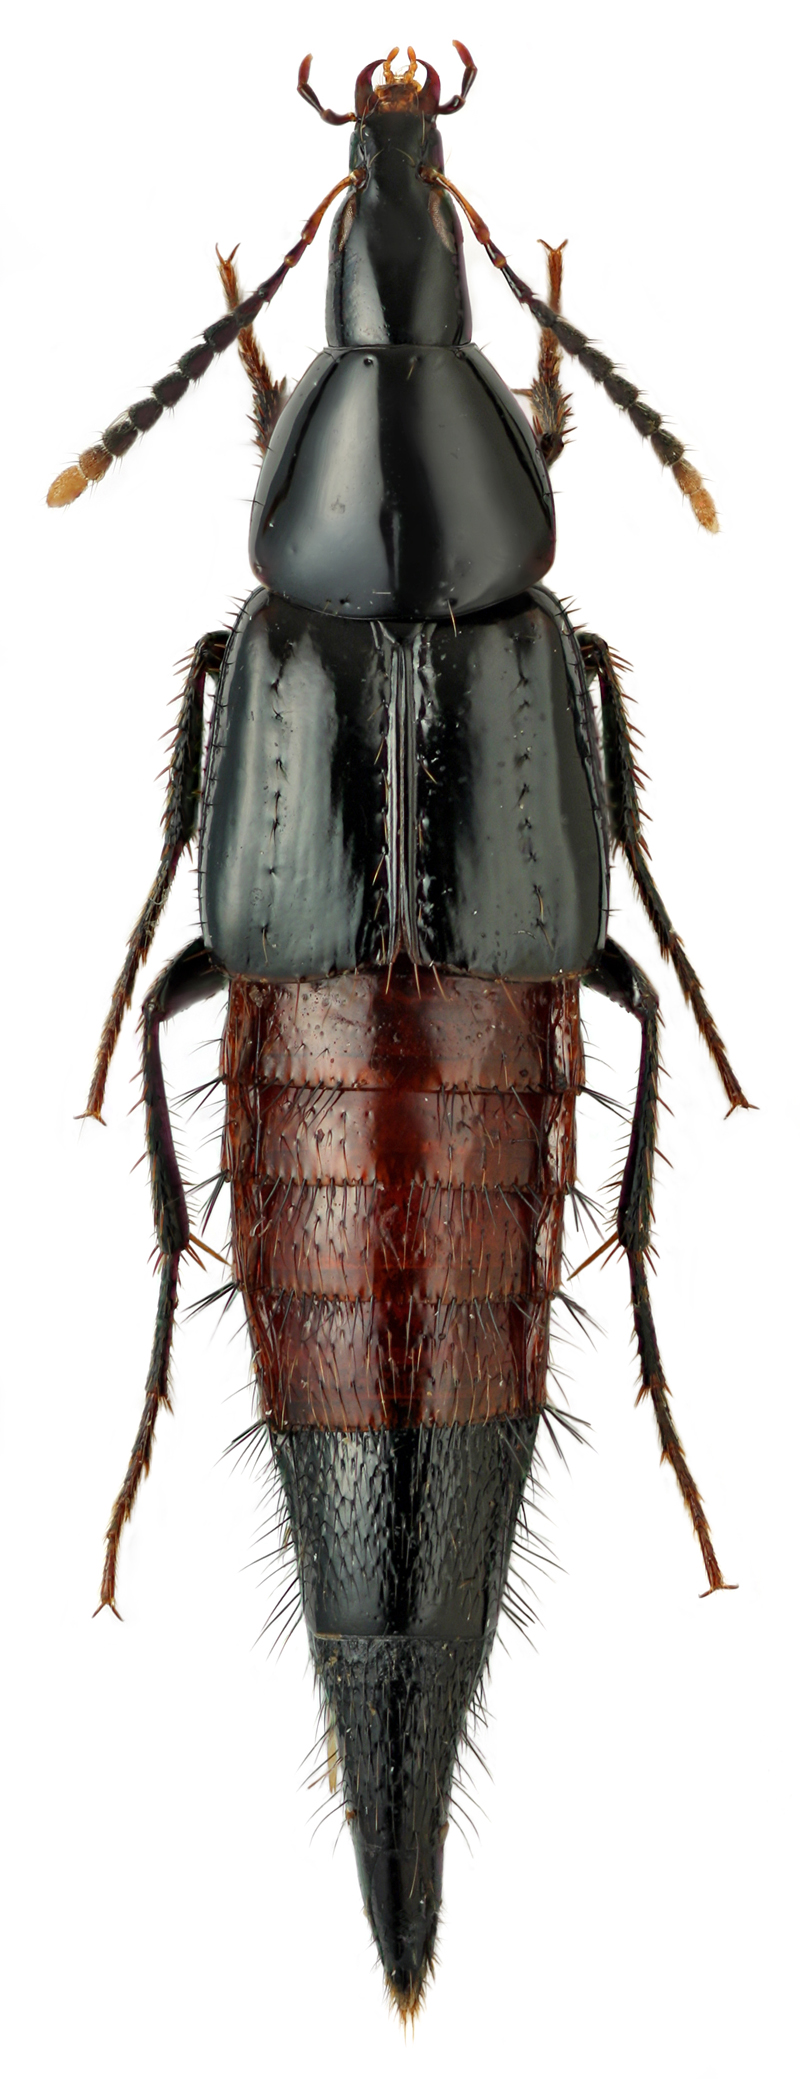 Lordithon praenobilis (Kraatz, 1879)